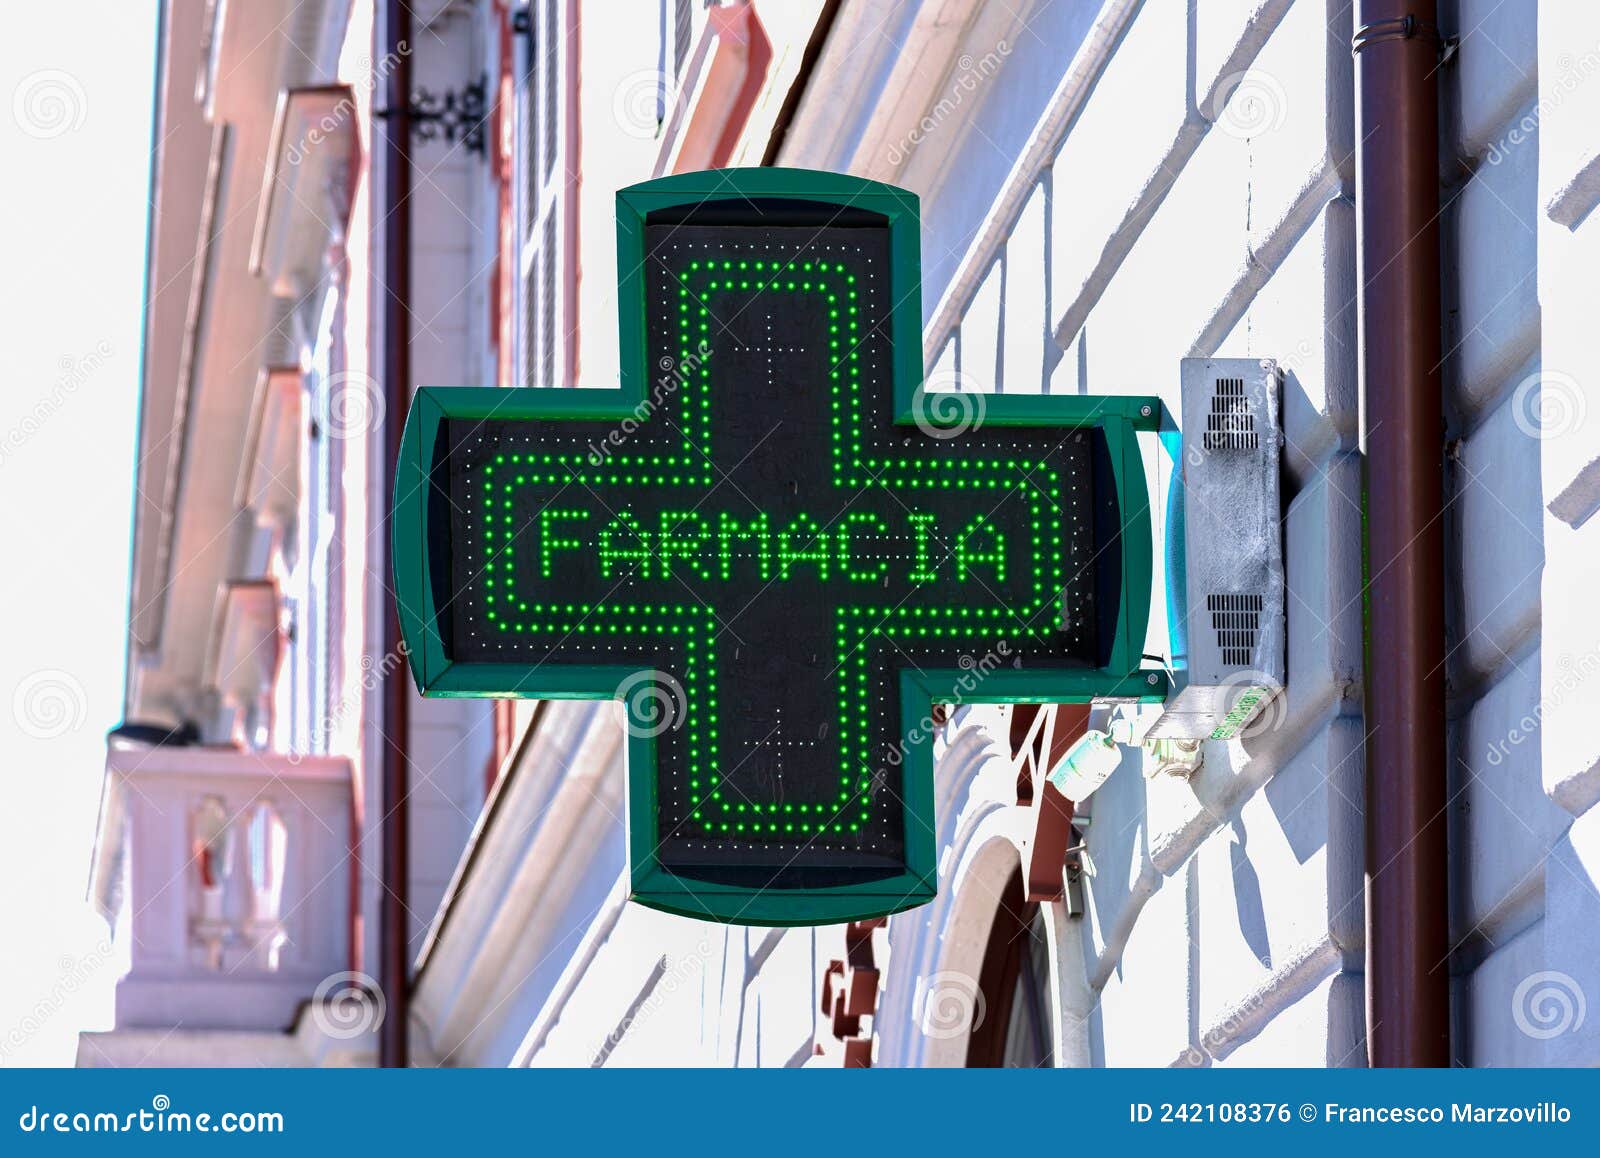 green cross pharmacy sign led